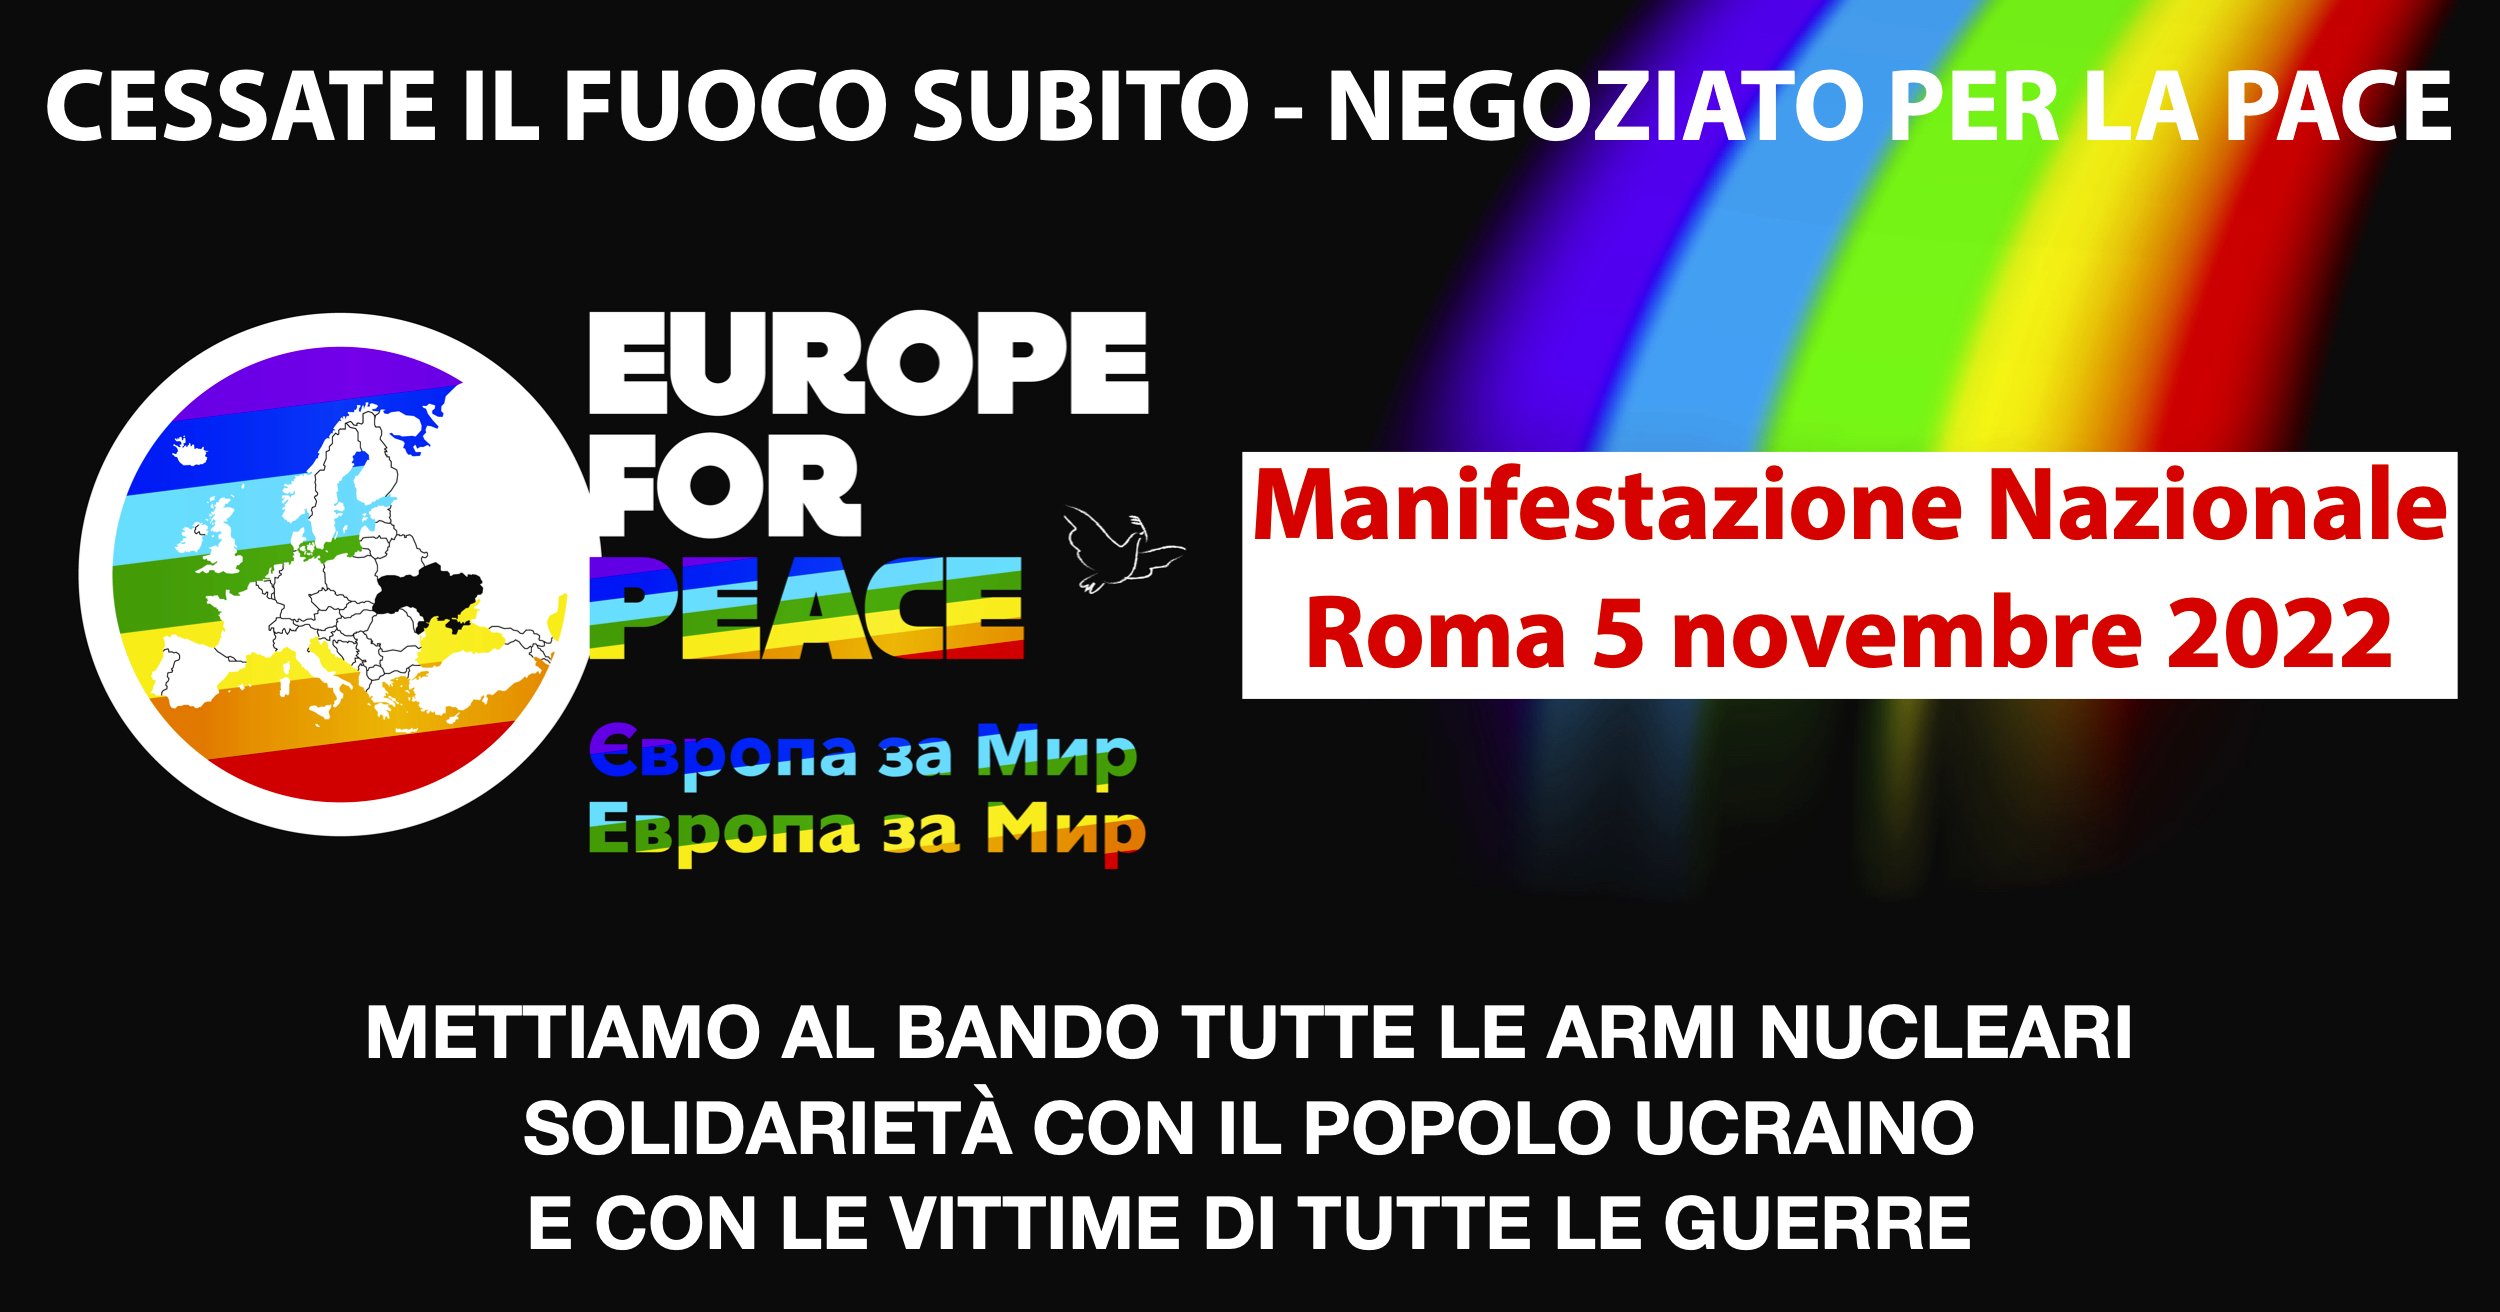 Europe for Peace - Manifestazione nazionale 5 novembre